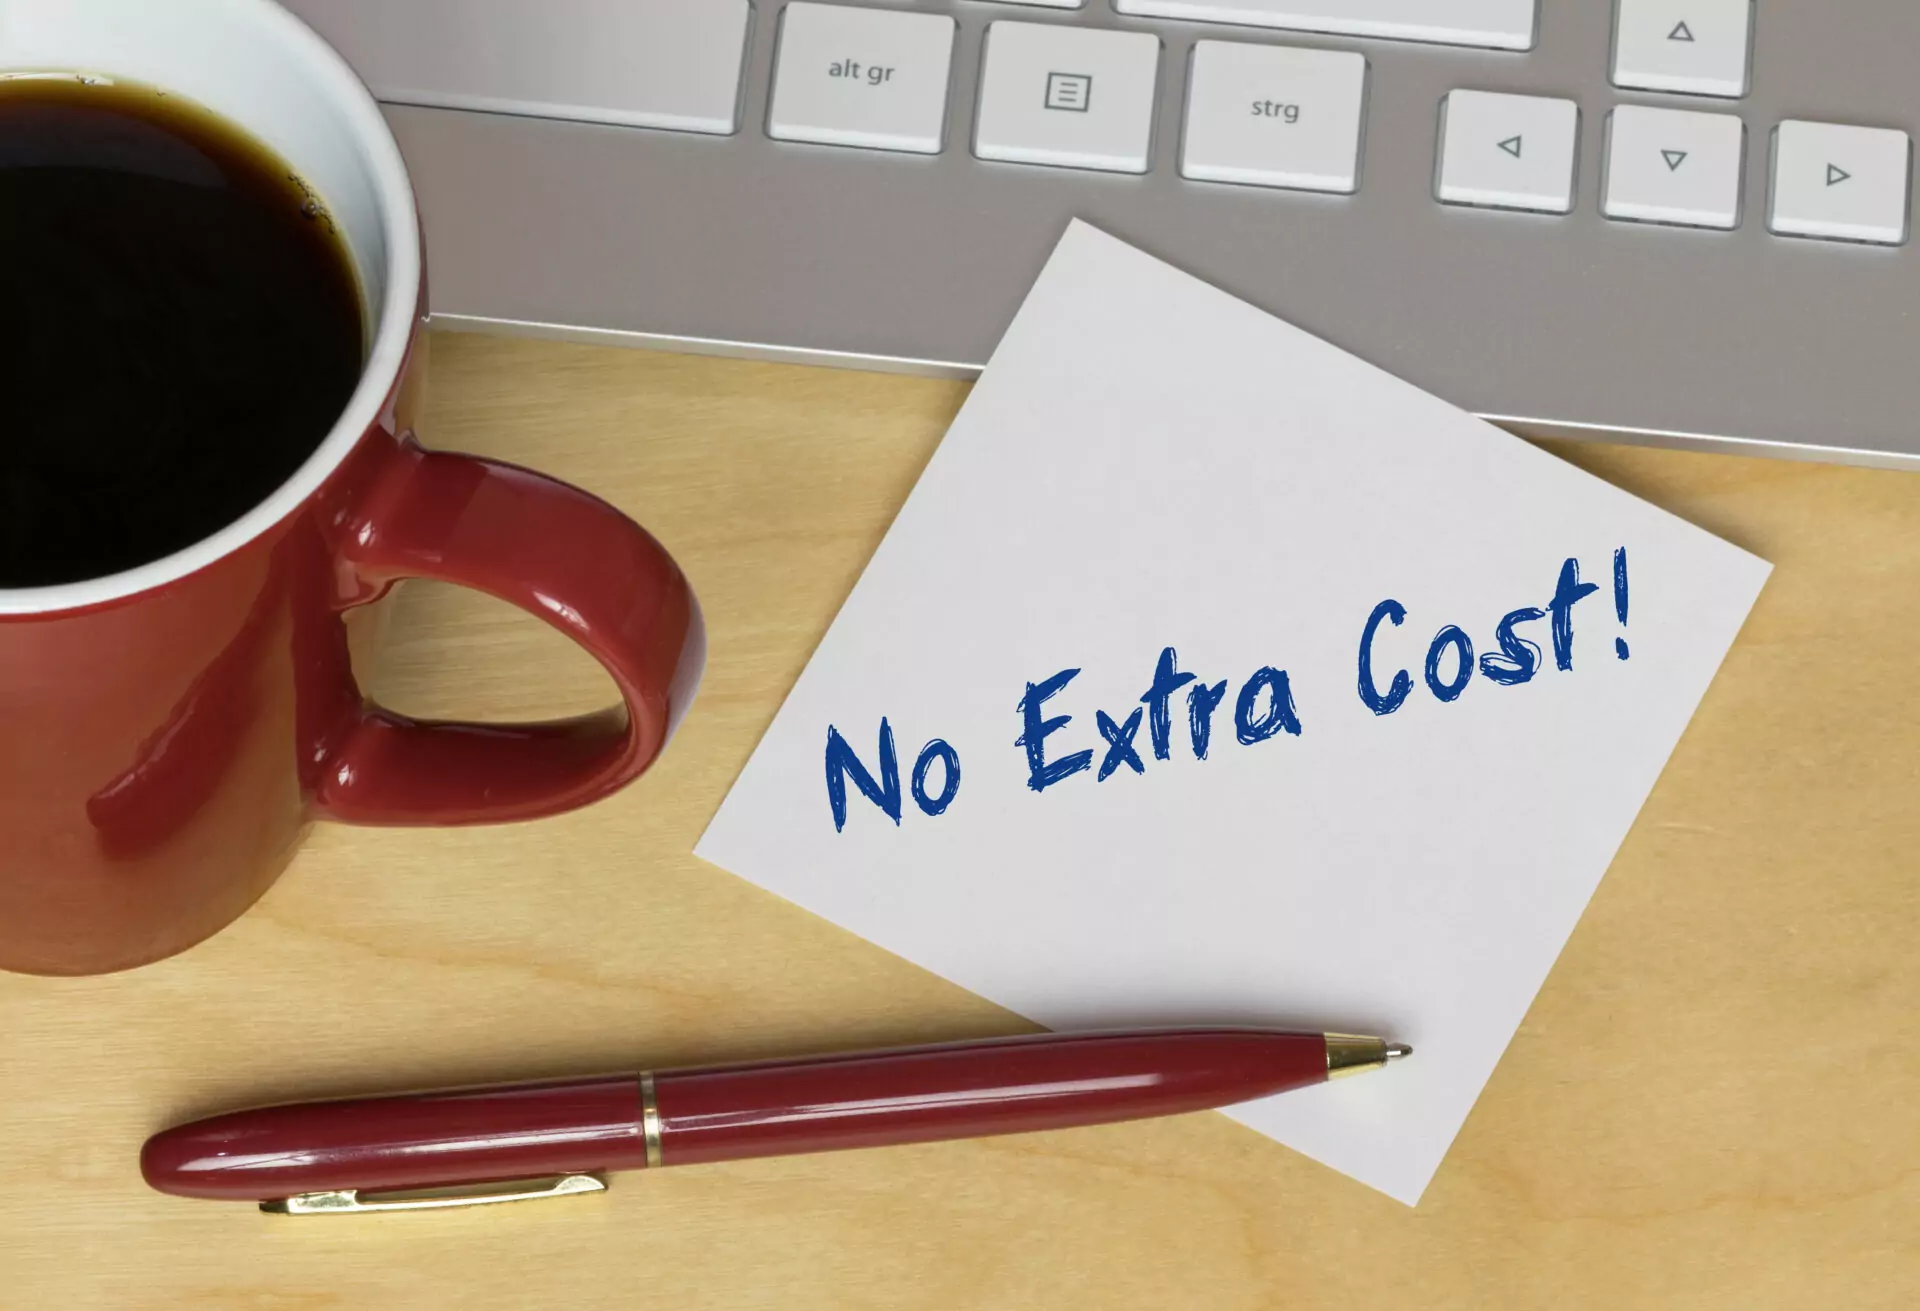 visuel d'une note où il est écrit no extra cost ! avec un stylo, un mug de café et un clavier d'ordinateur